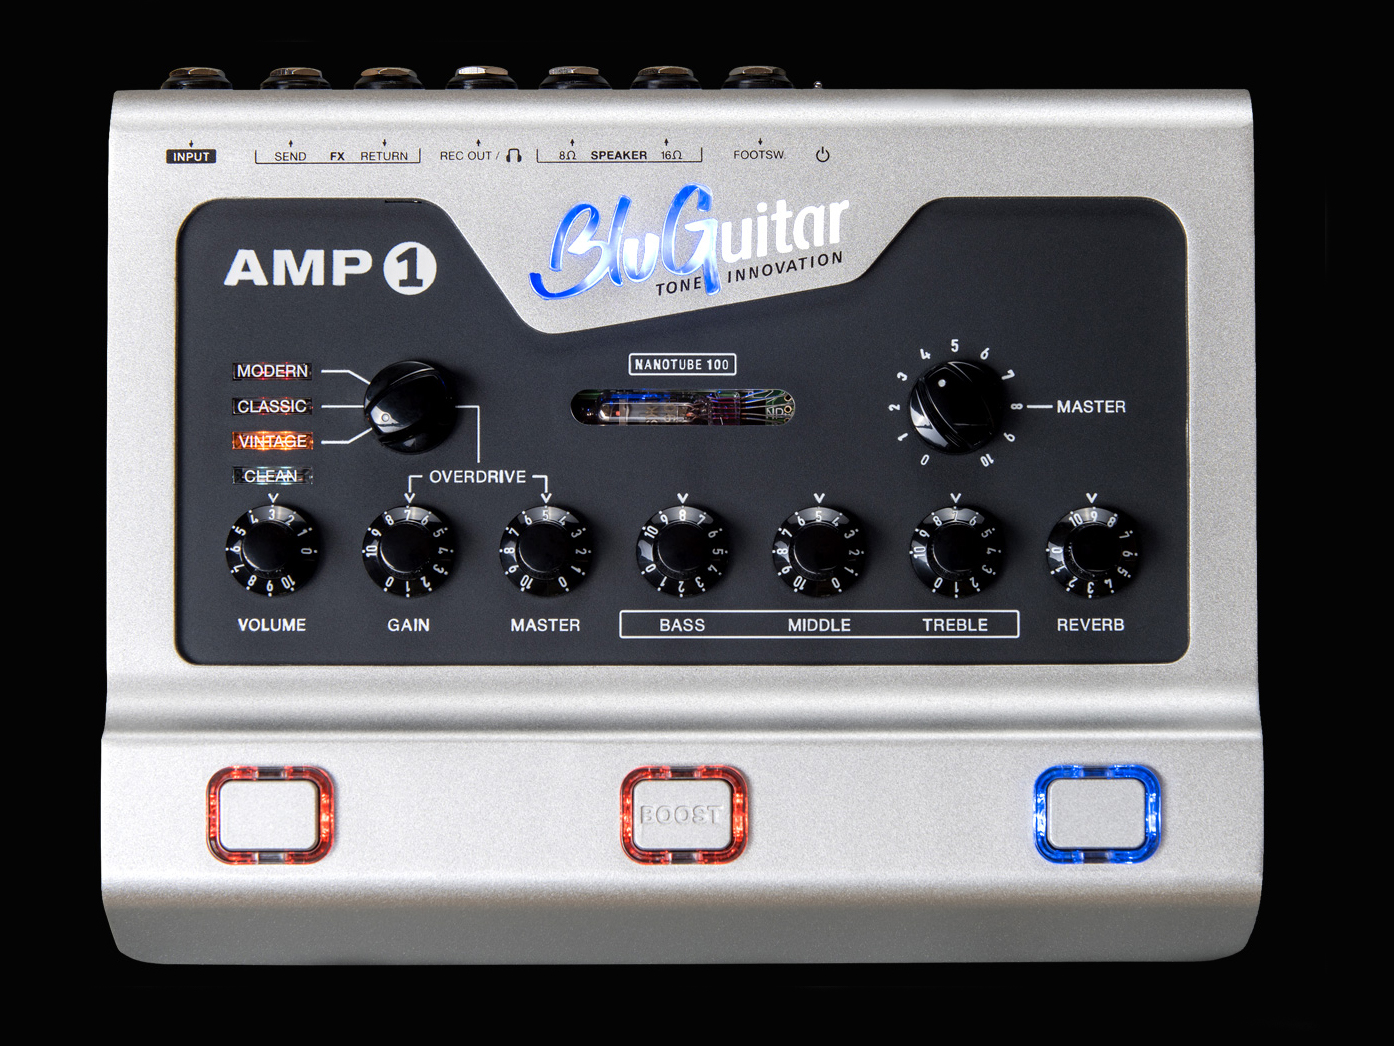 Bluguitar升级其受欢迎的AMP1踏板